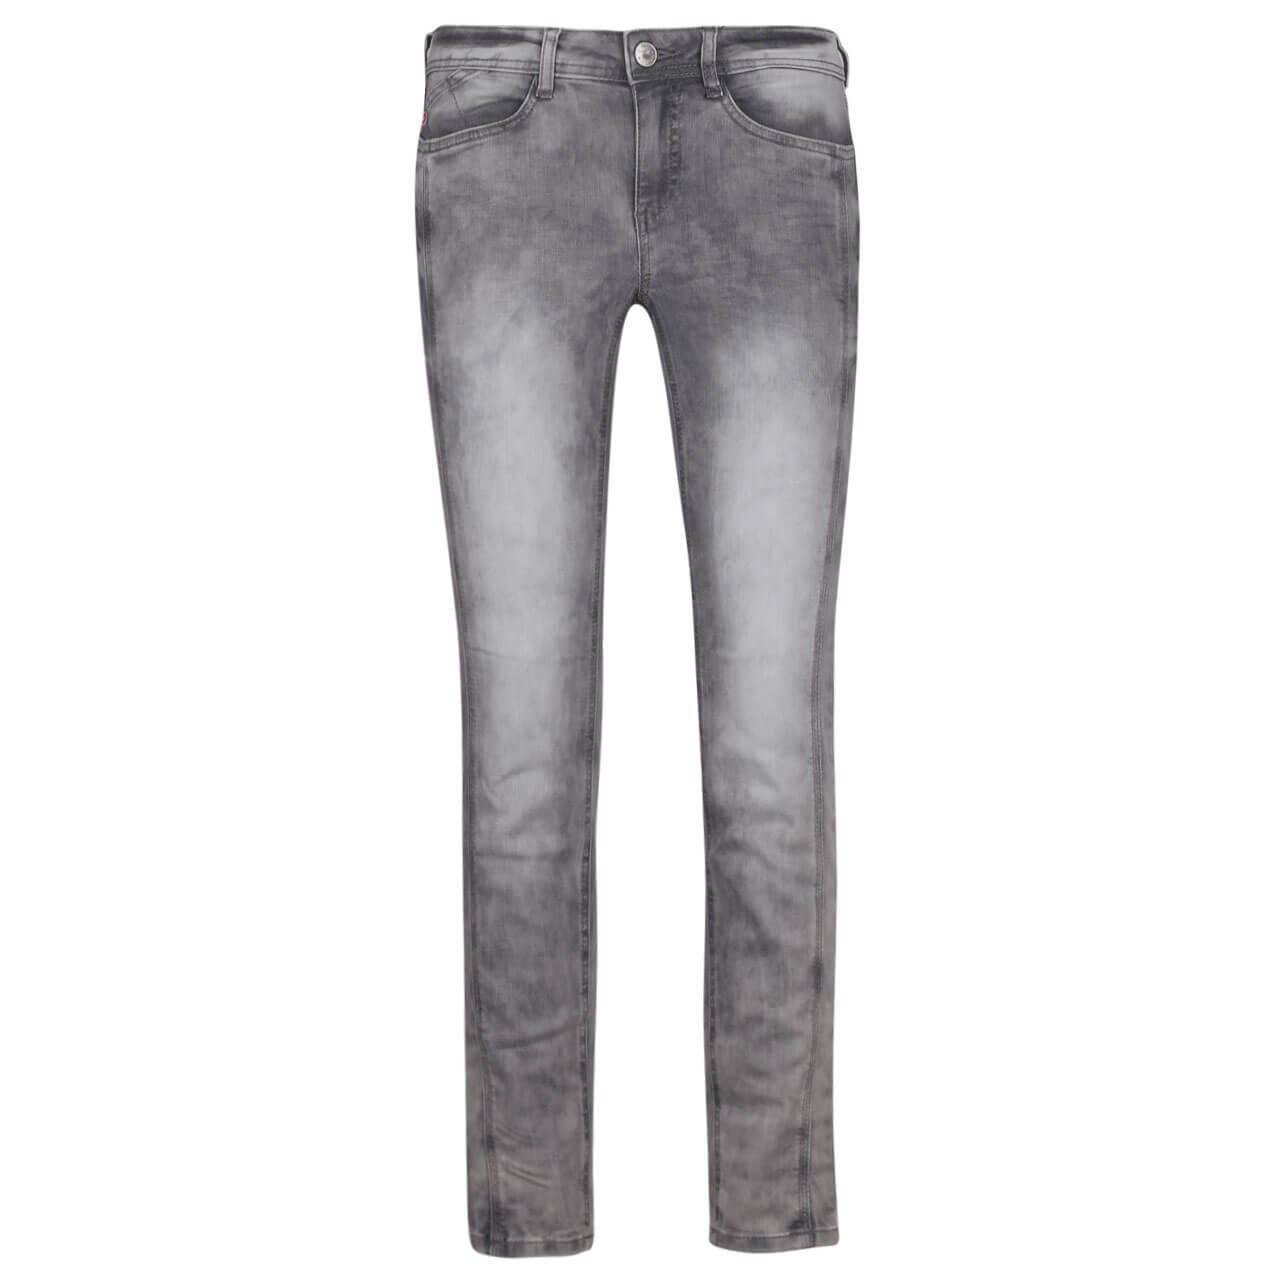 Street One Jeans York für Damen in Grau verwaschen, FarbNr.: 12278